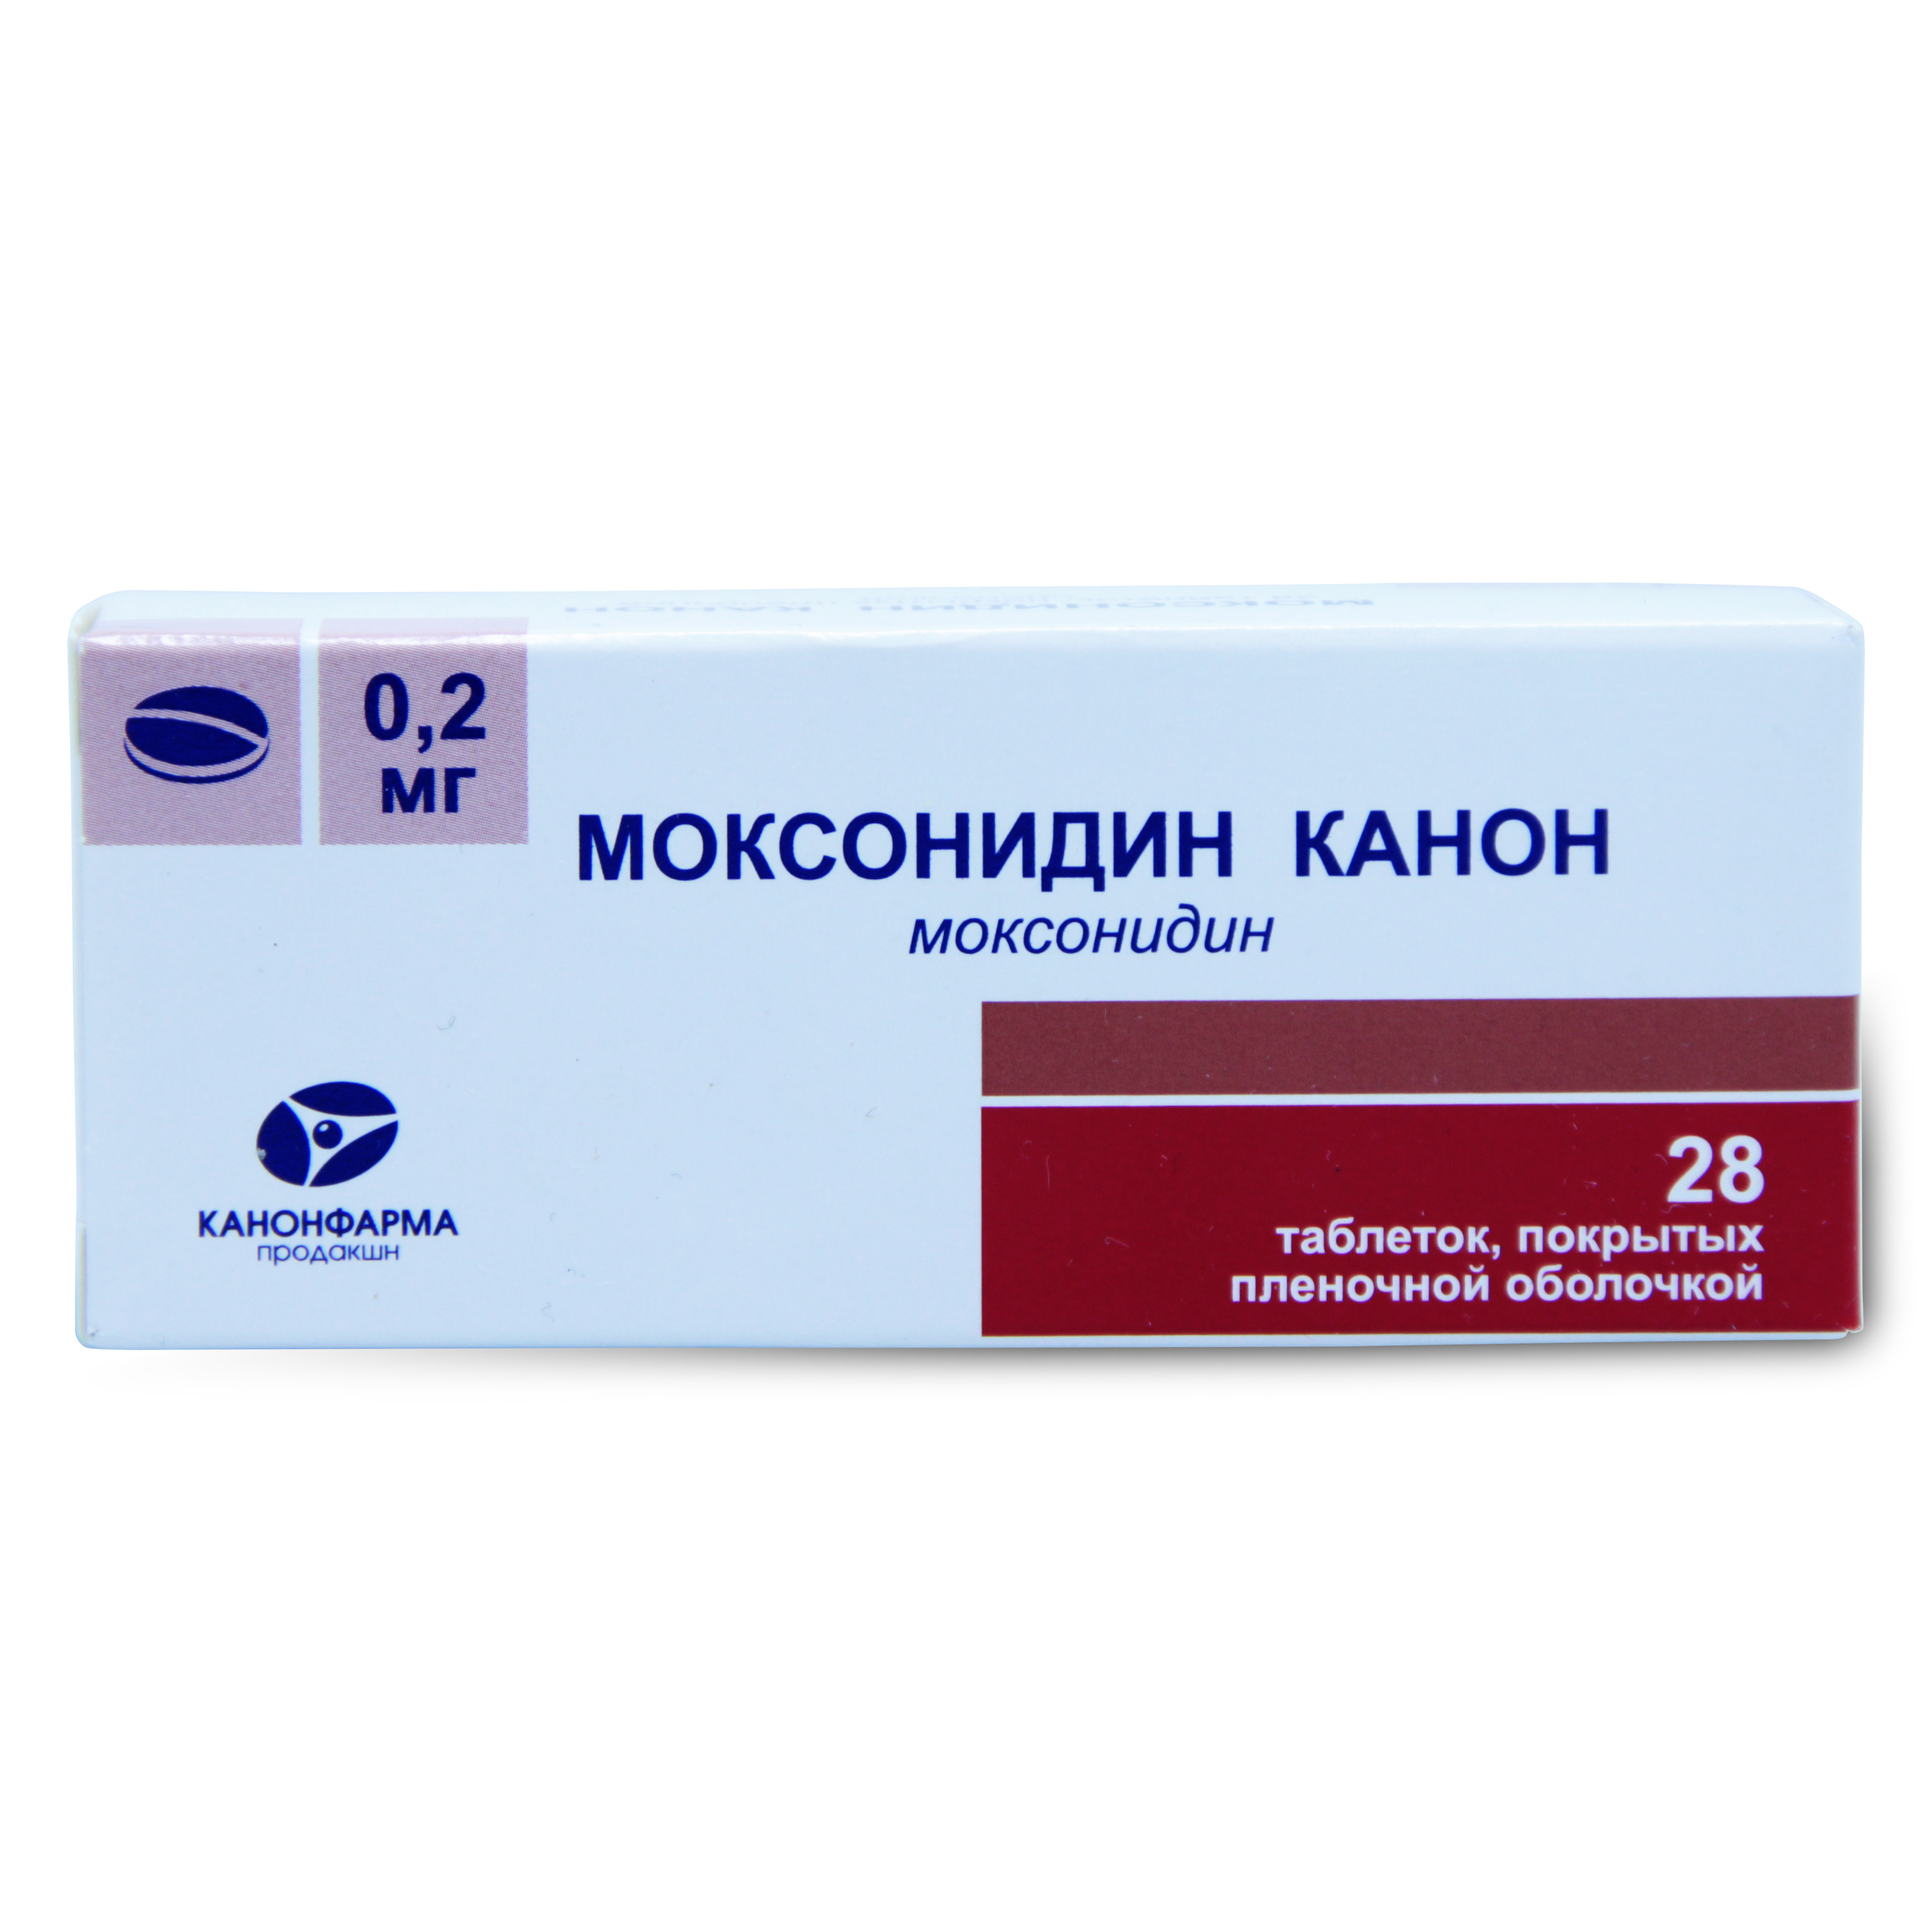 Купить Моксонидин Канон таблетки покрытые пленочной оболочкой 0, 2 мг 28 шт., Канонфарма продакшн ЗАО